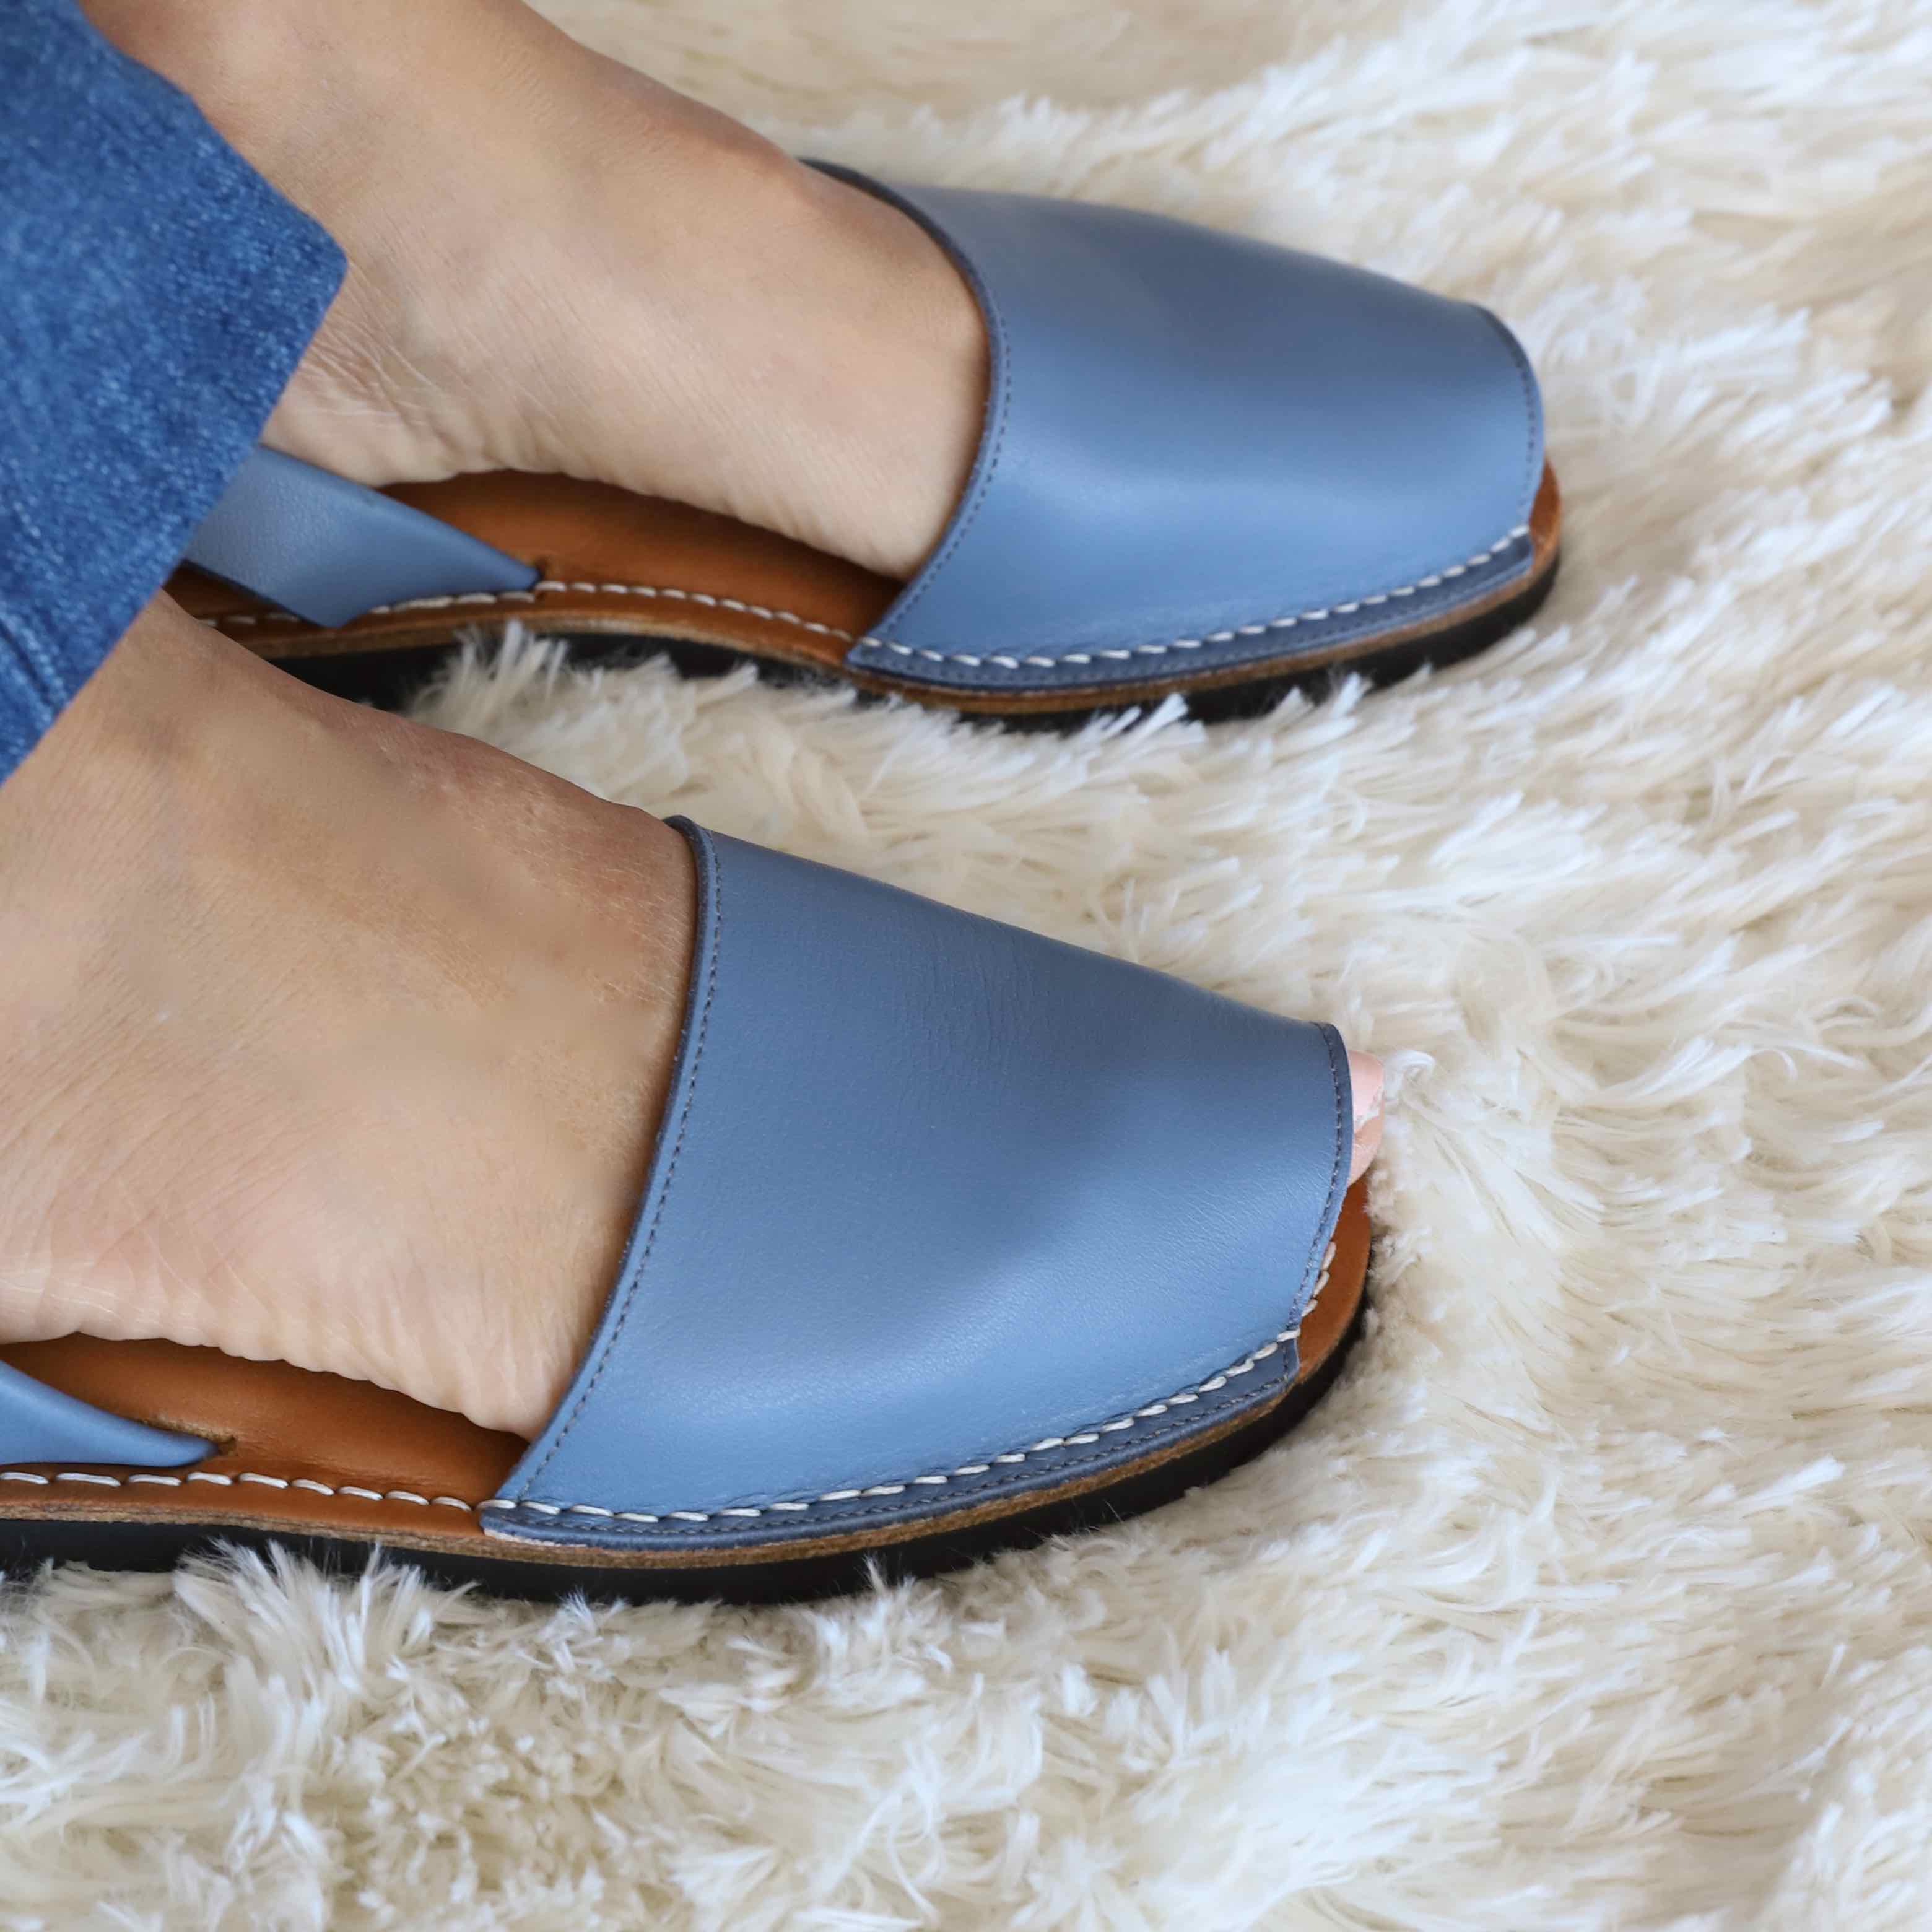 Classic Blue denim sandals